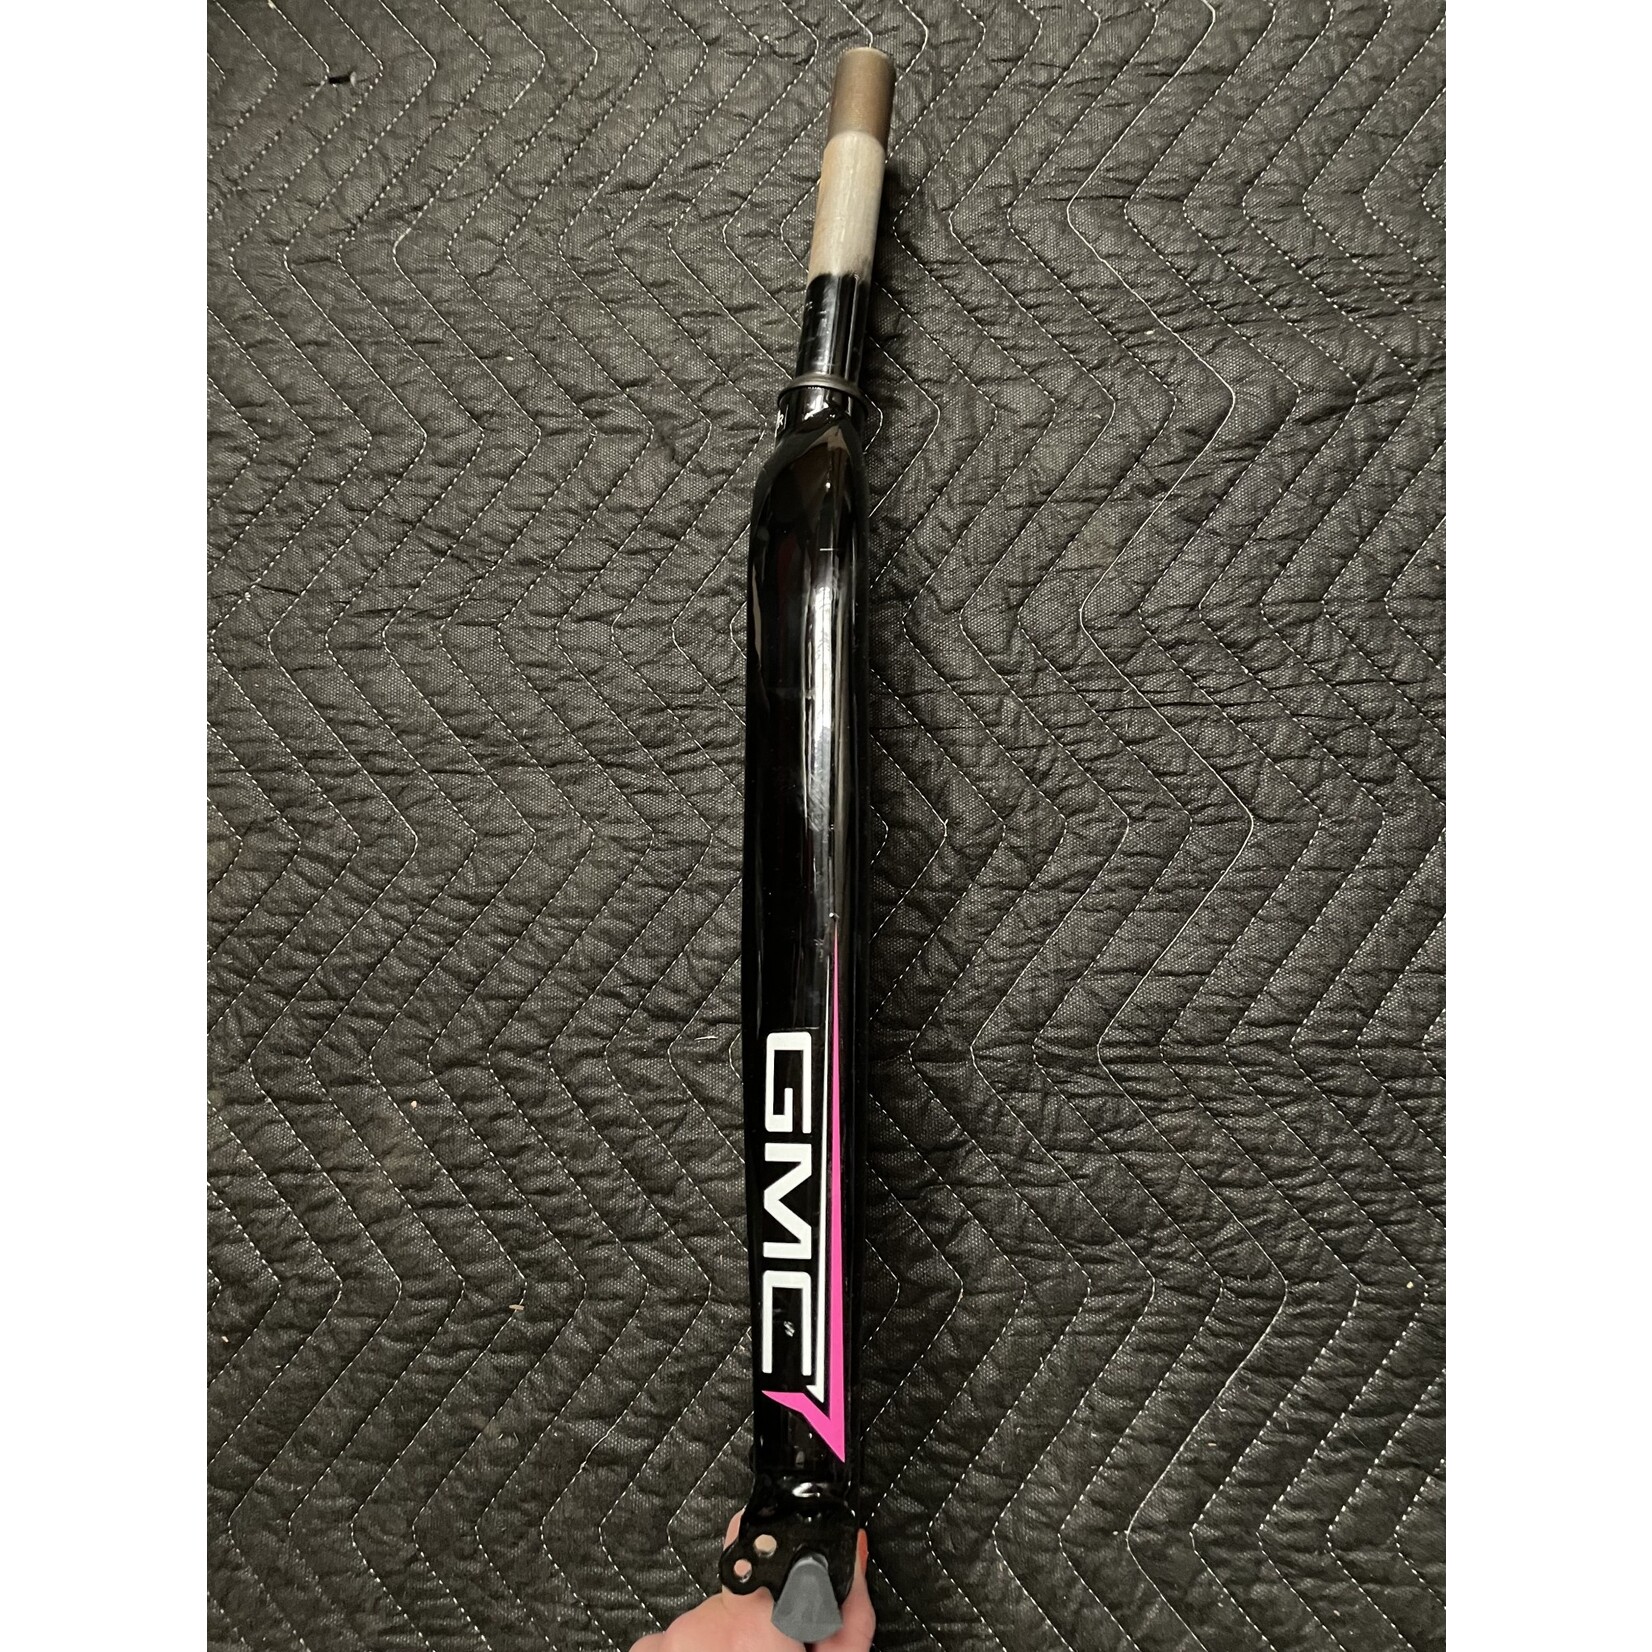 GMC 700C Threaded Bicycle Fork 5 5/8” Steer Tube (Black & Pink)